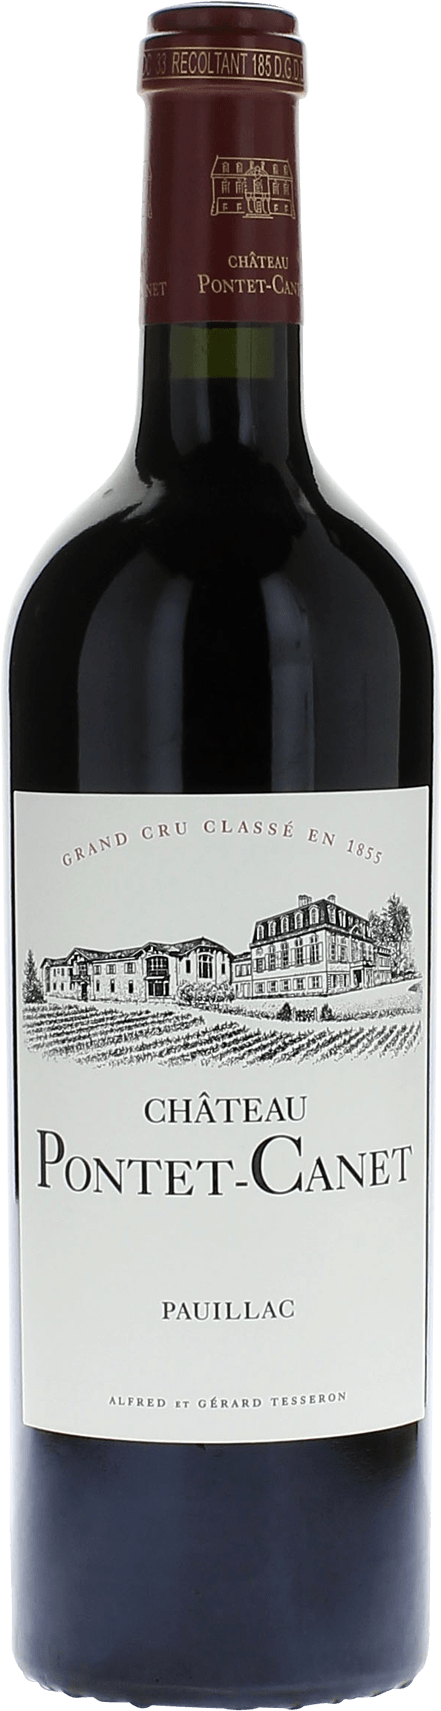 Pontet canet 1999 5me Grand cru class Pauillac, Bordeaux rouge